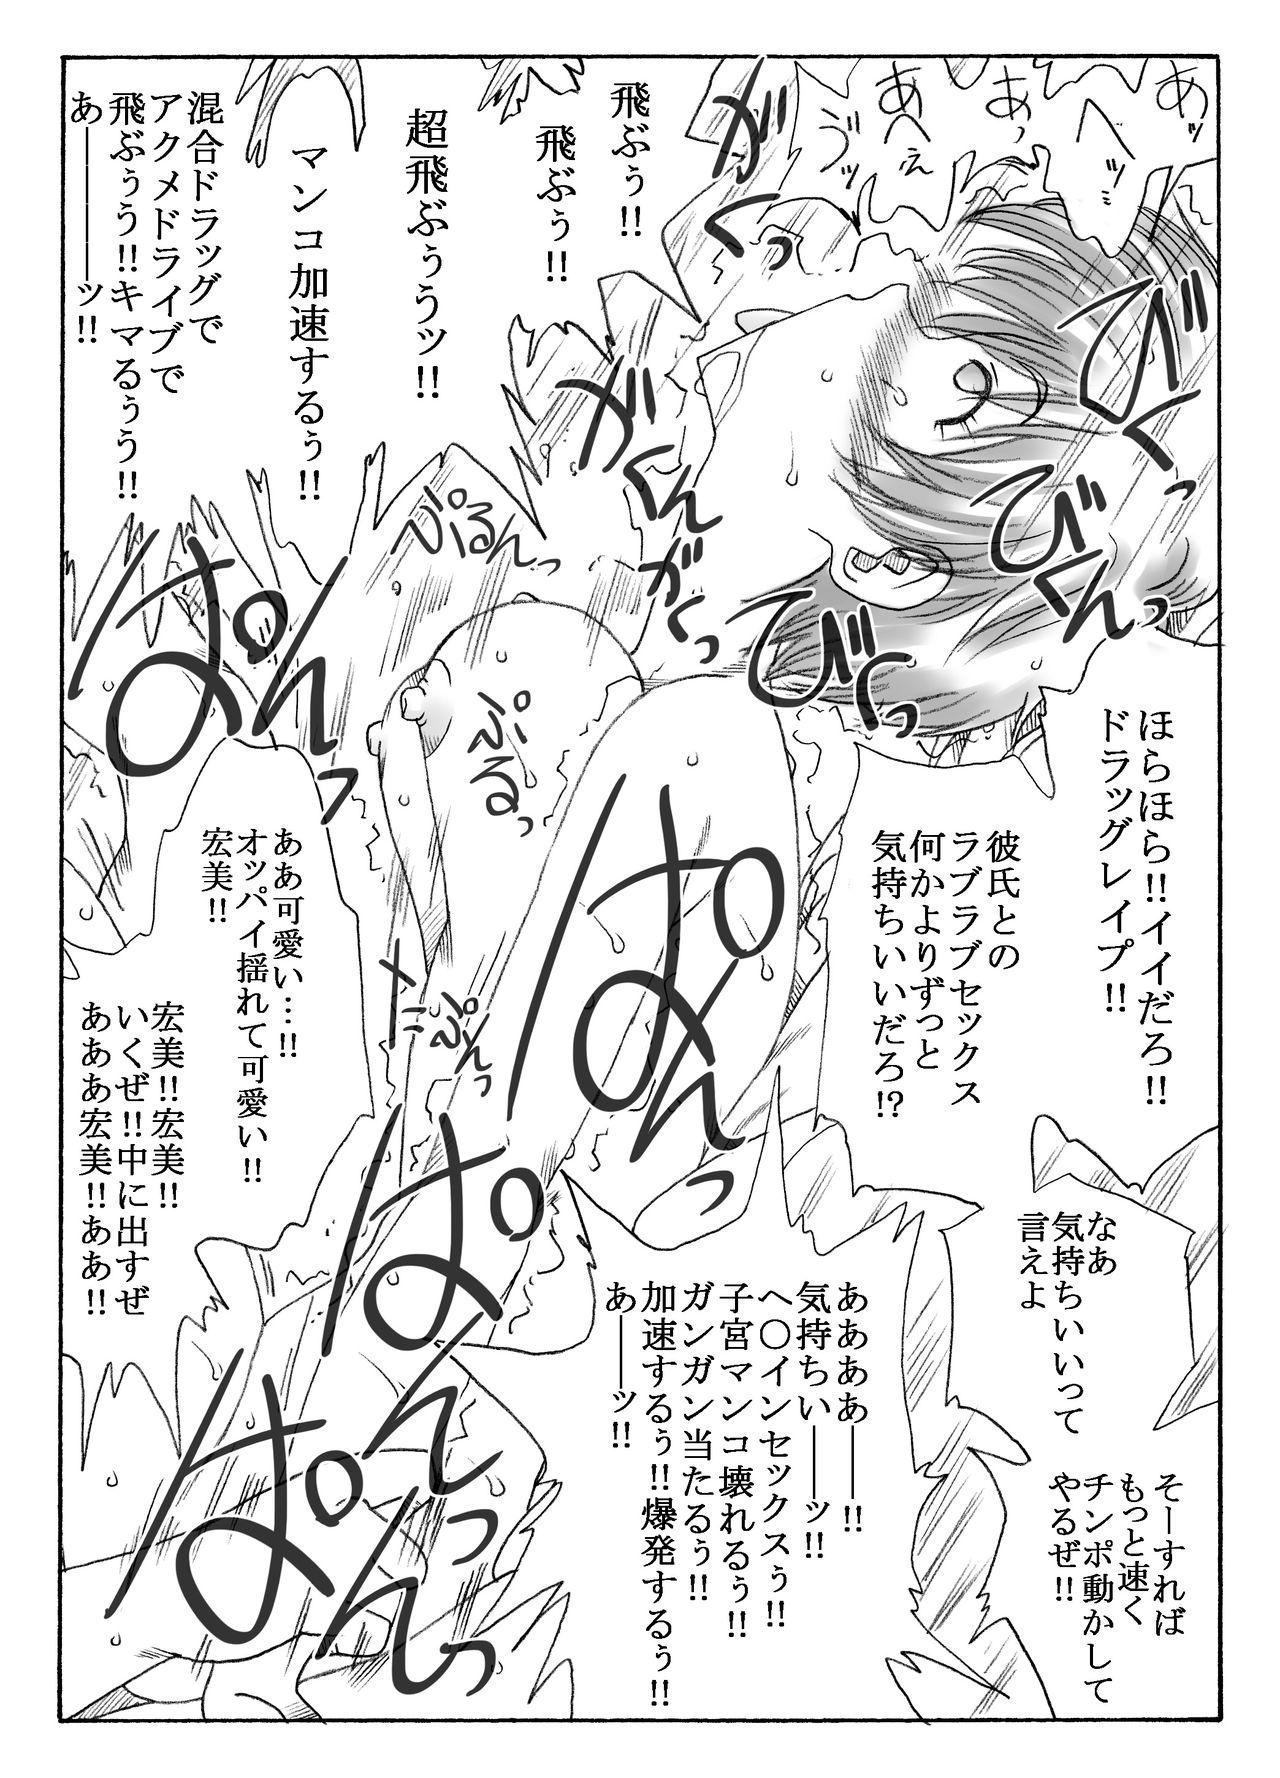 Classroom kusuridukinisare ryoujyokusareru senseito seitotachi - Original Nylon - Page 5